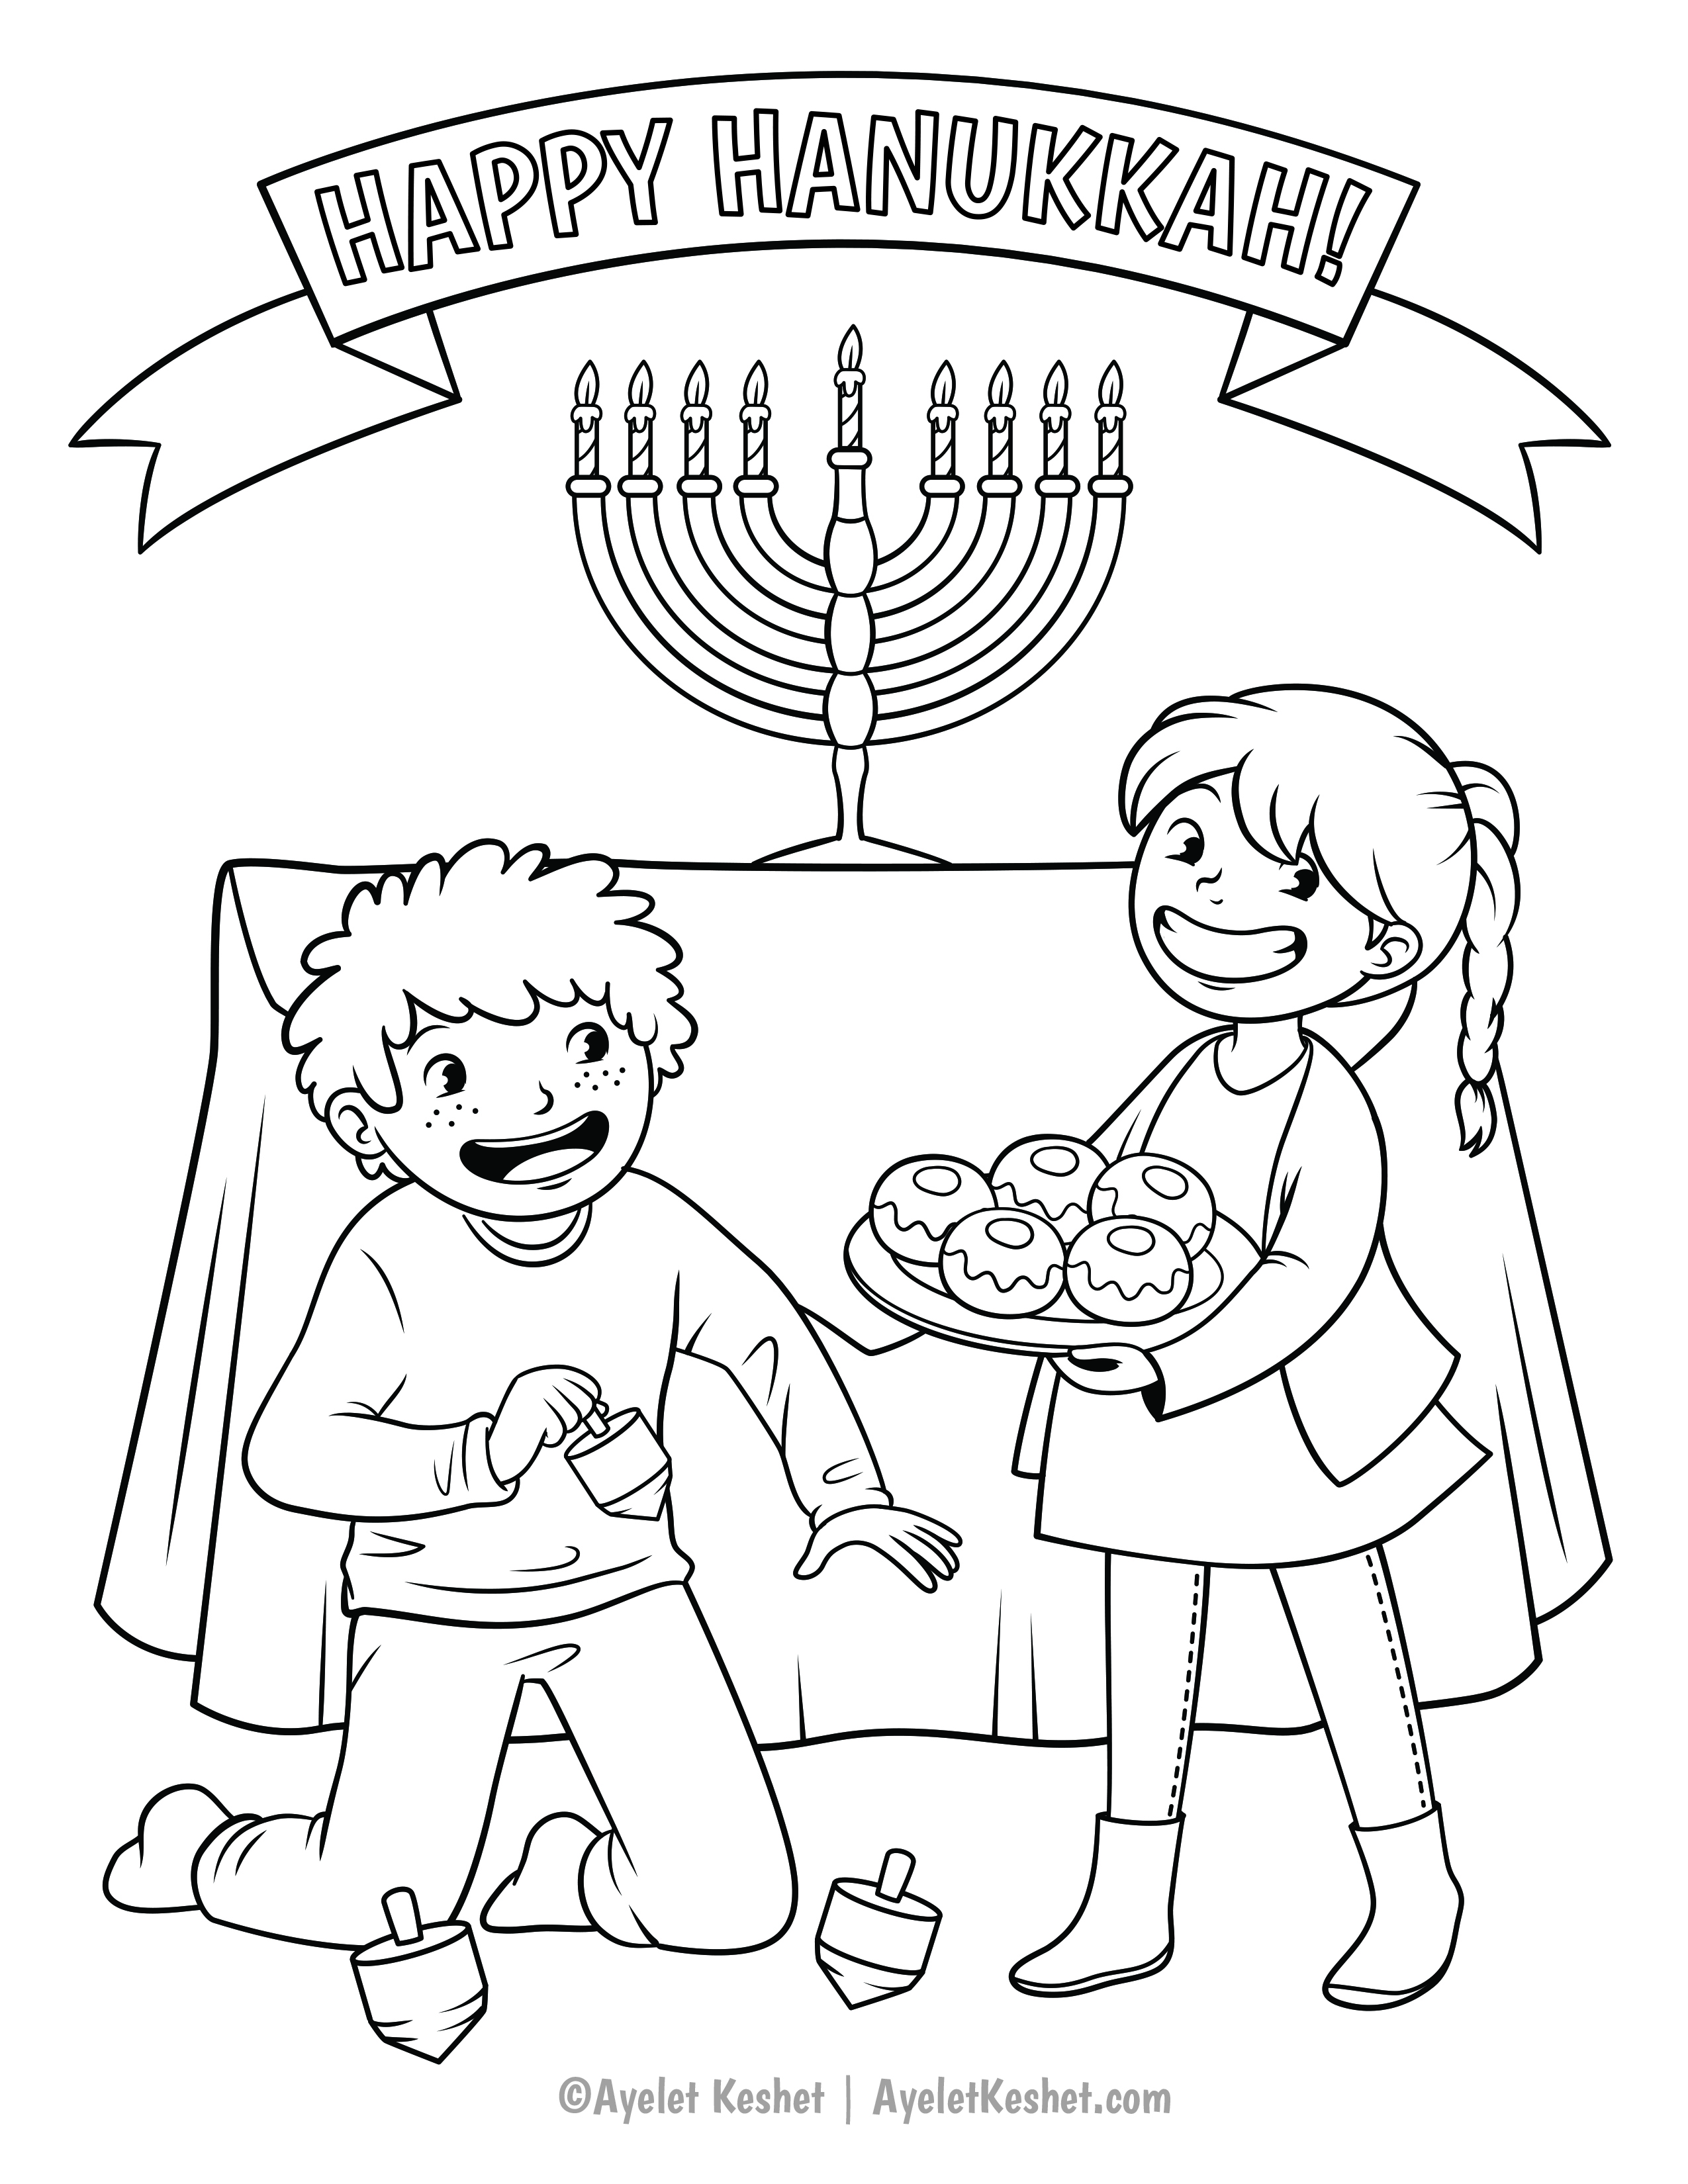 Free printable Hanukkah coloring pages   Ayelet Keshet